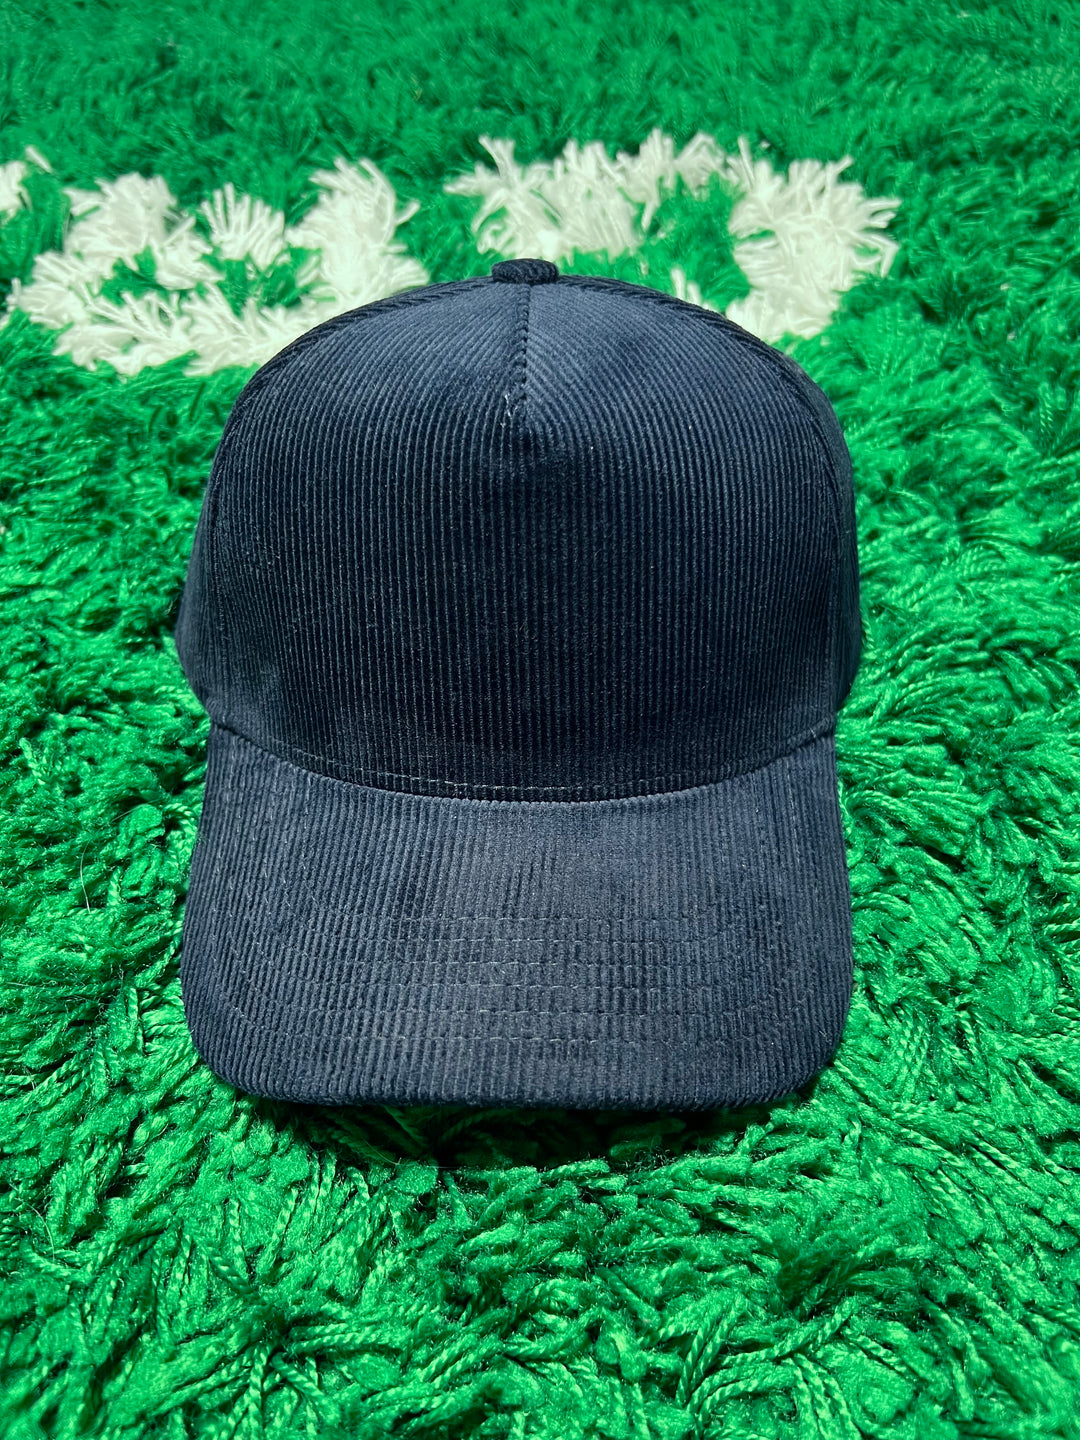 Black Velvet Trucker Hats – Embroidery Plug